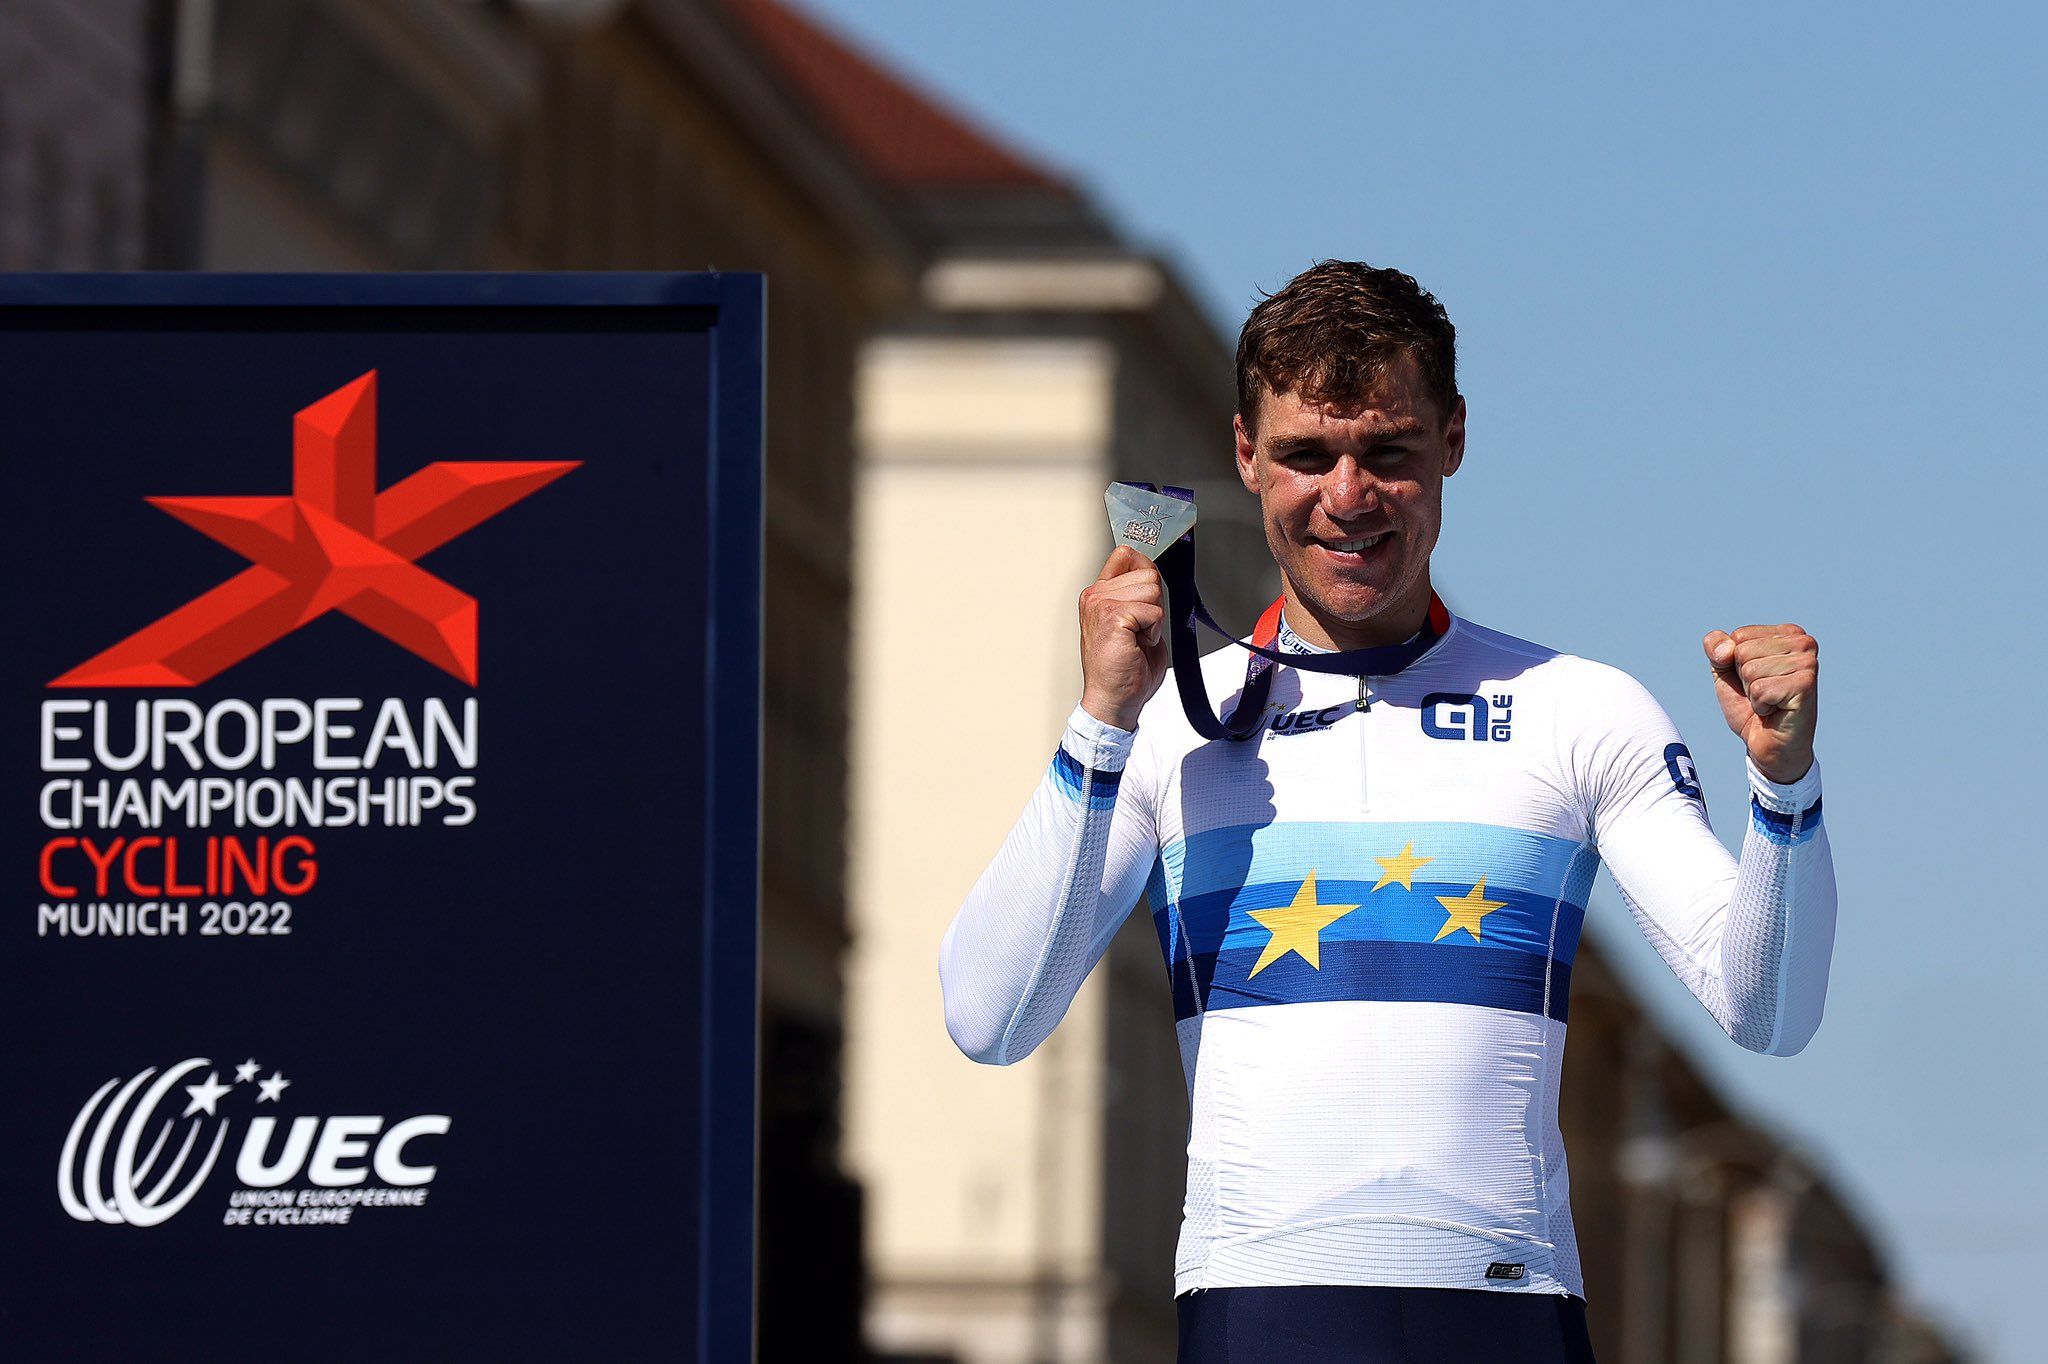 Фабио Якобсен — новый чемпион Европы по велоспорту 2022 года